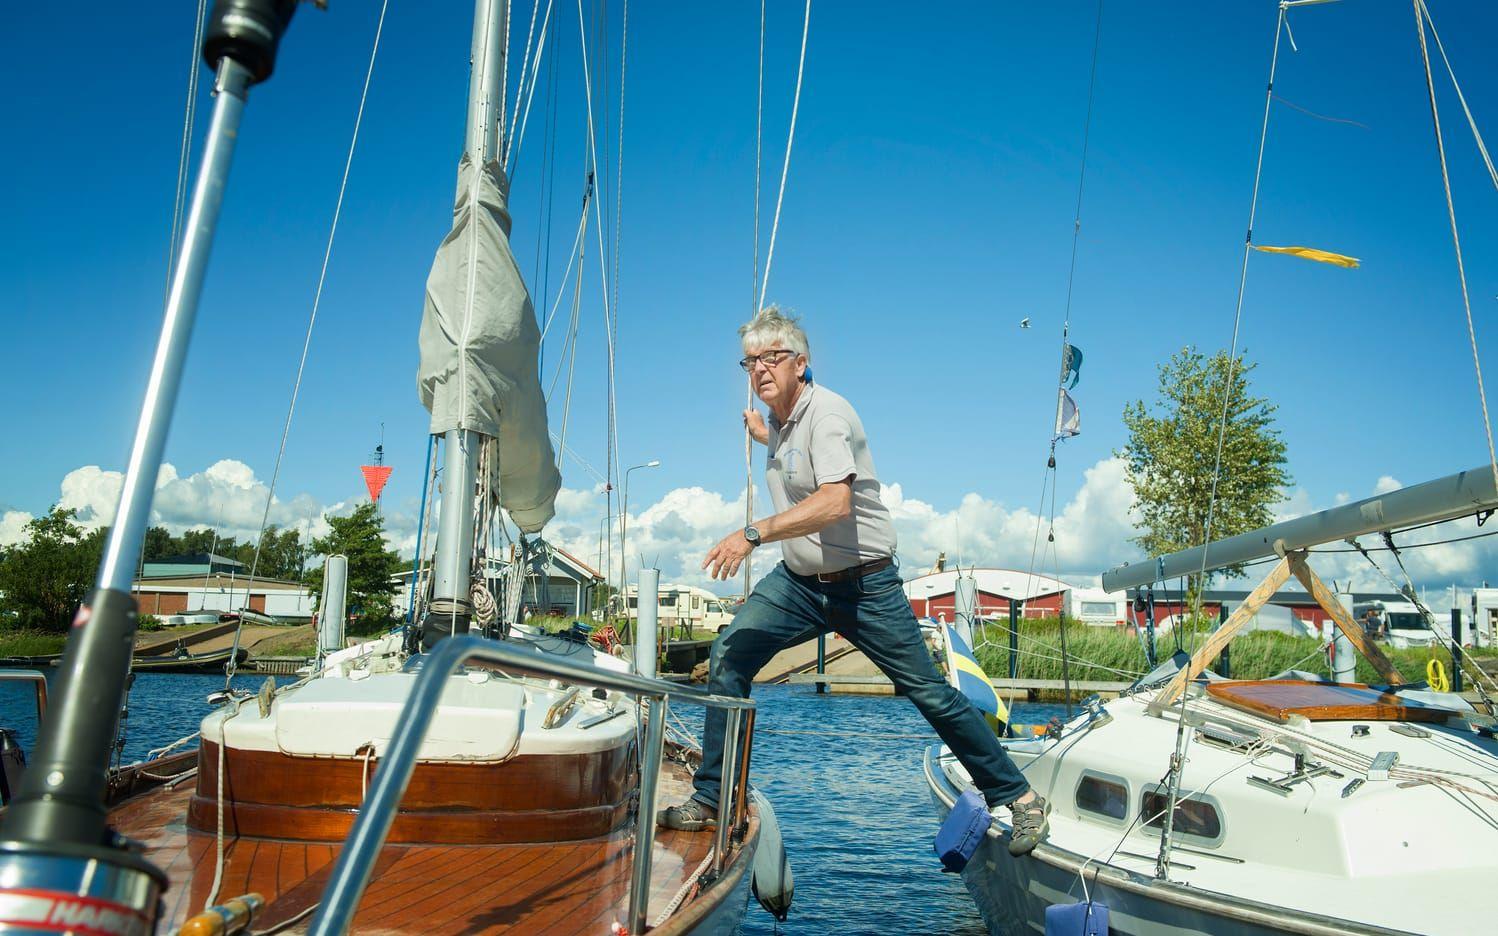 SM-amiral. Svante Svensson är projektledare för SM i folkbåt, som avgörs i Halmstads SS regi till och med lördag. Han tävlar även själv med båten Svea. Bild: Jonatan Bylars